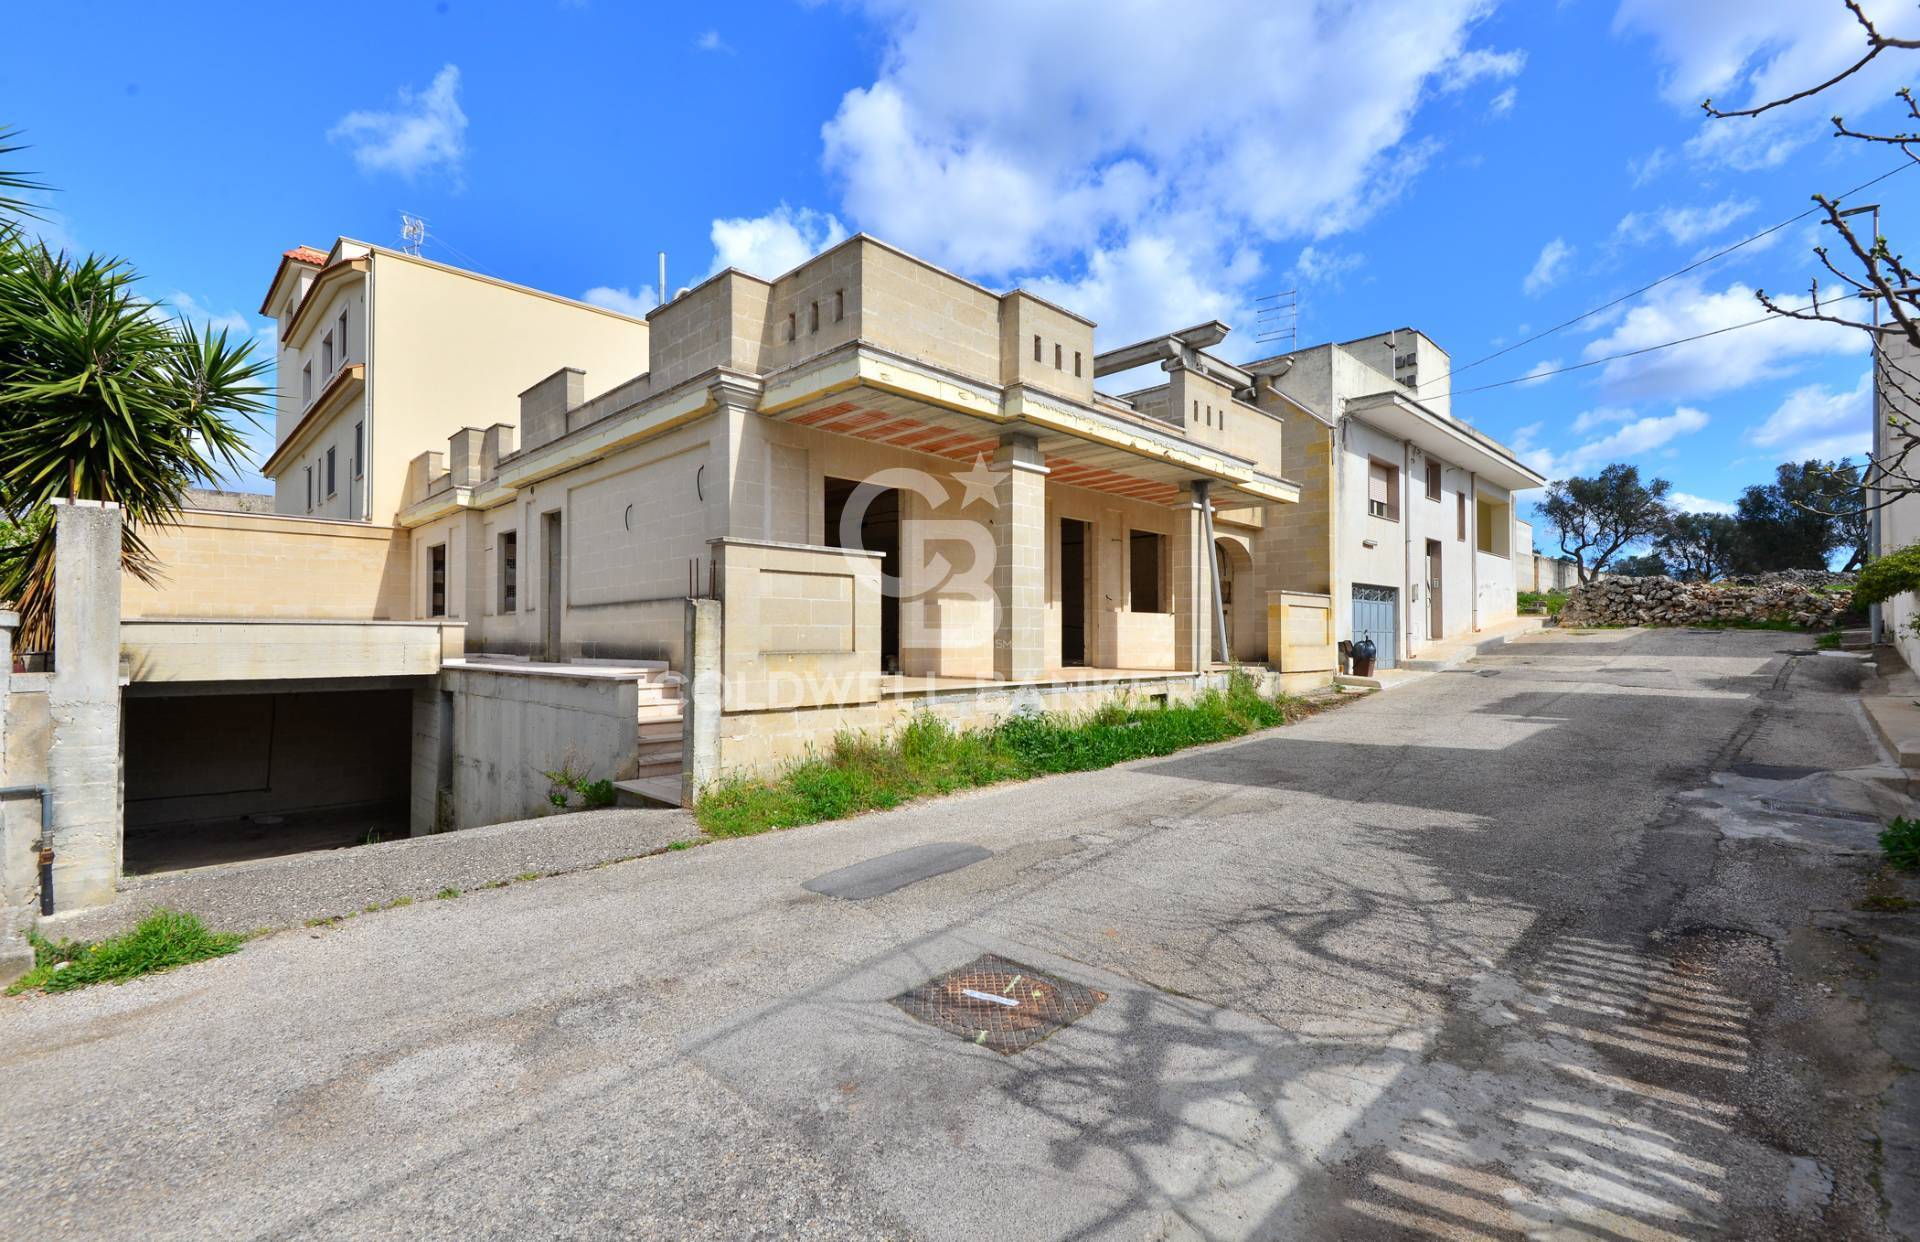 Villa in vendita a Villa Castelli, 2 locali, prezzo € 220.000 | PortaleAgenzieImmobiliari.it